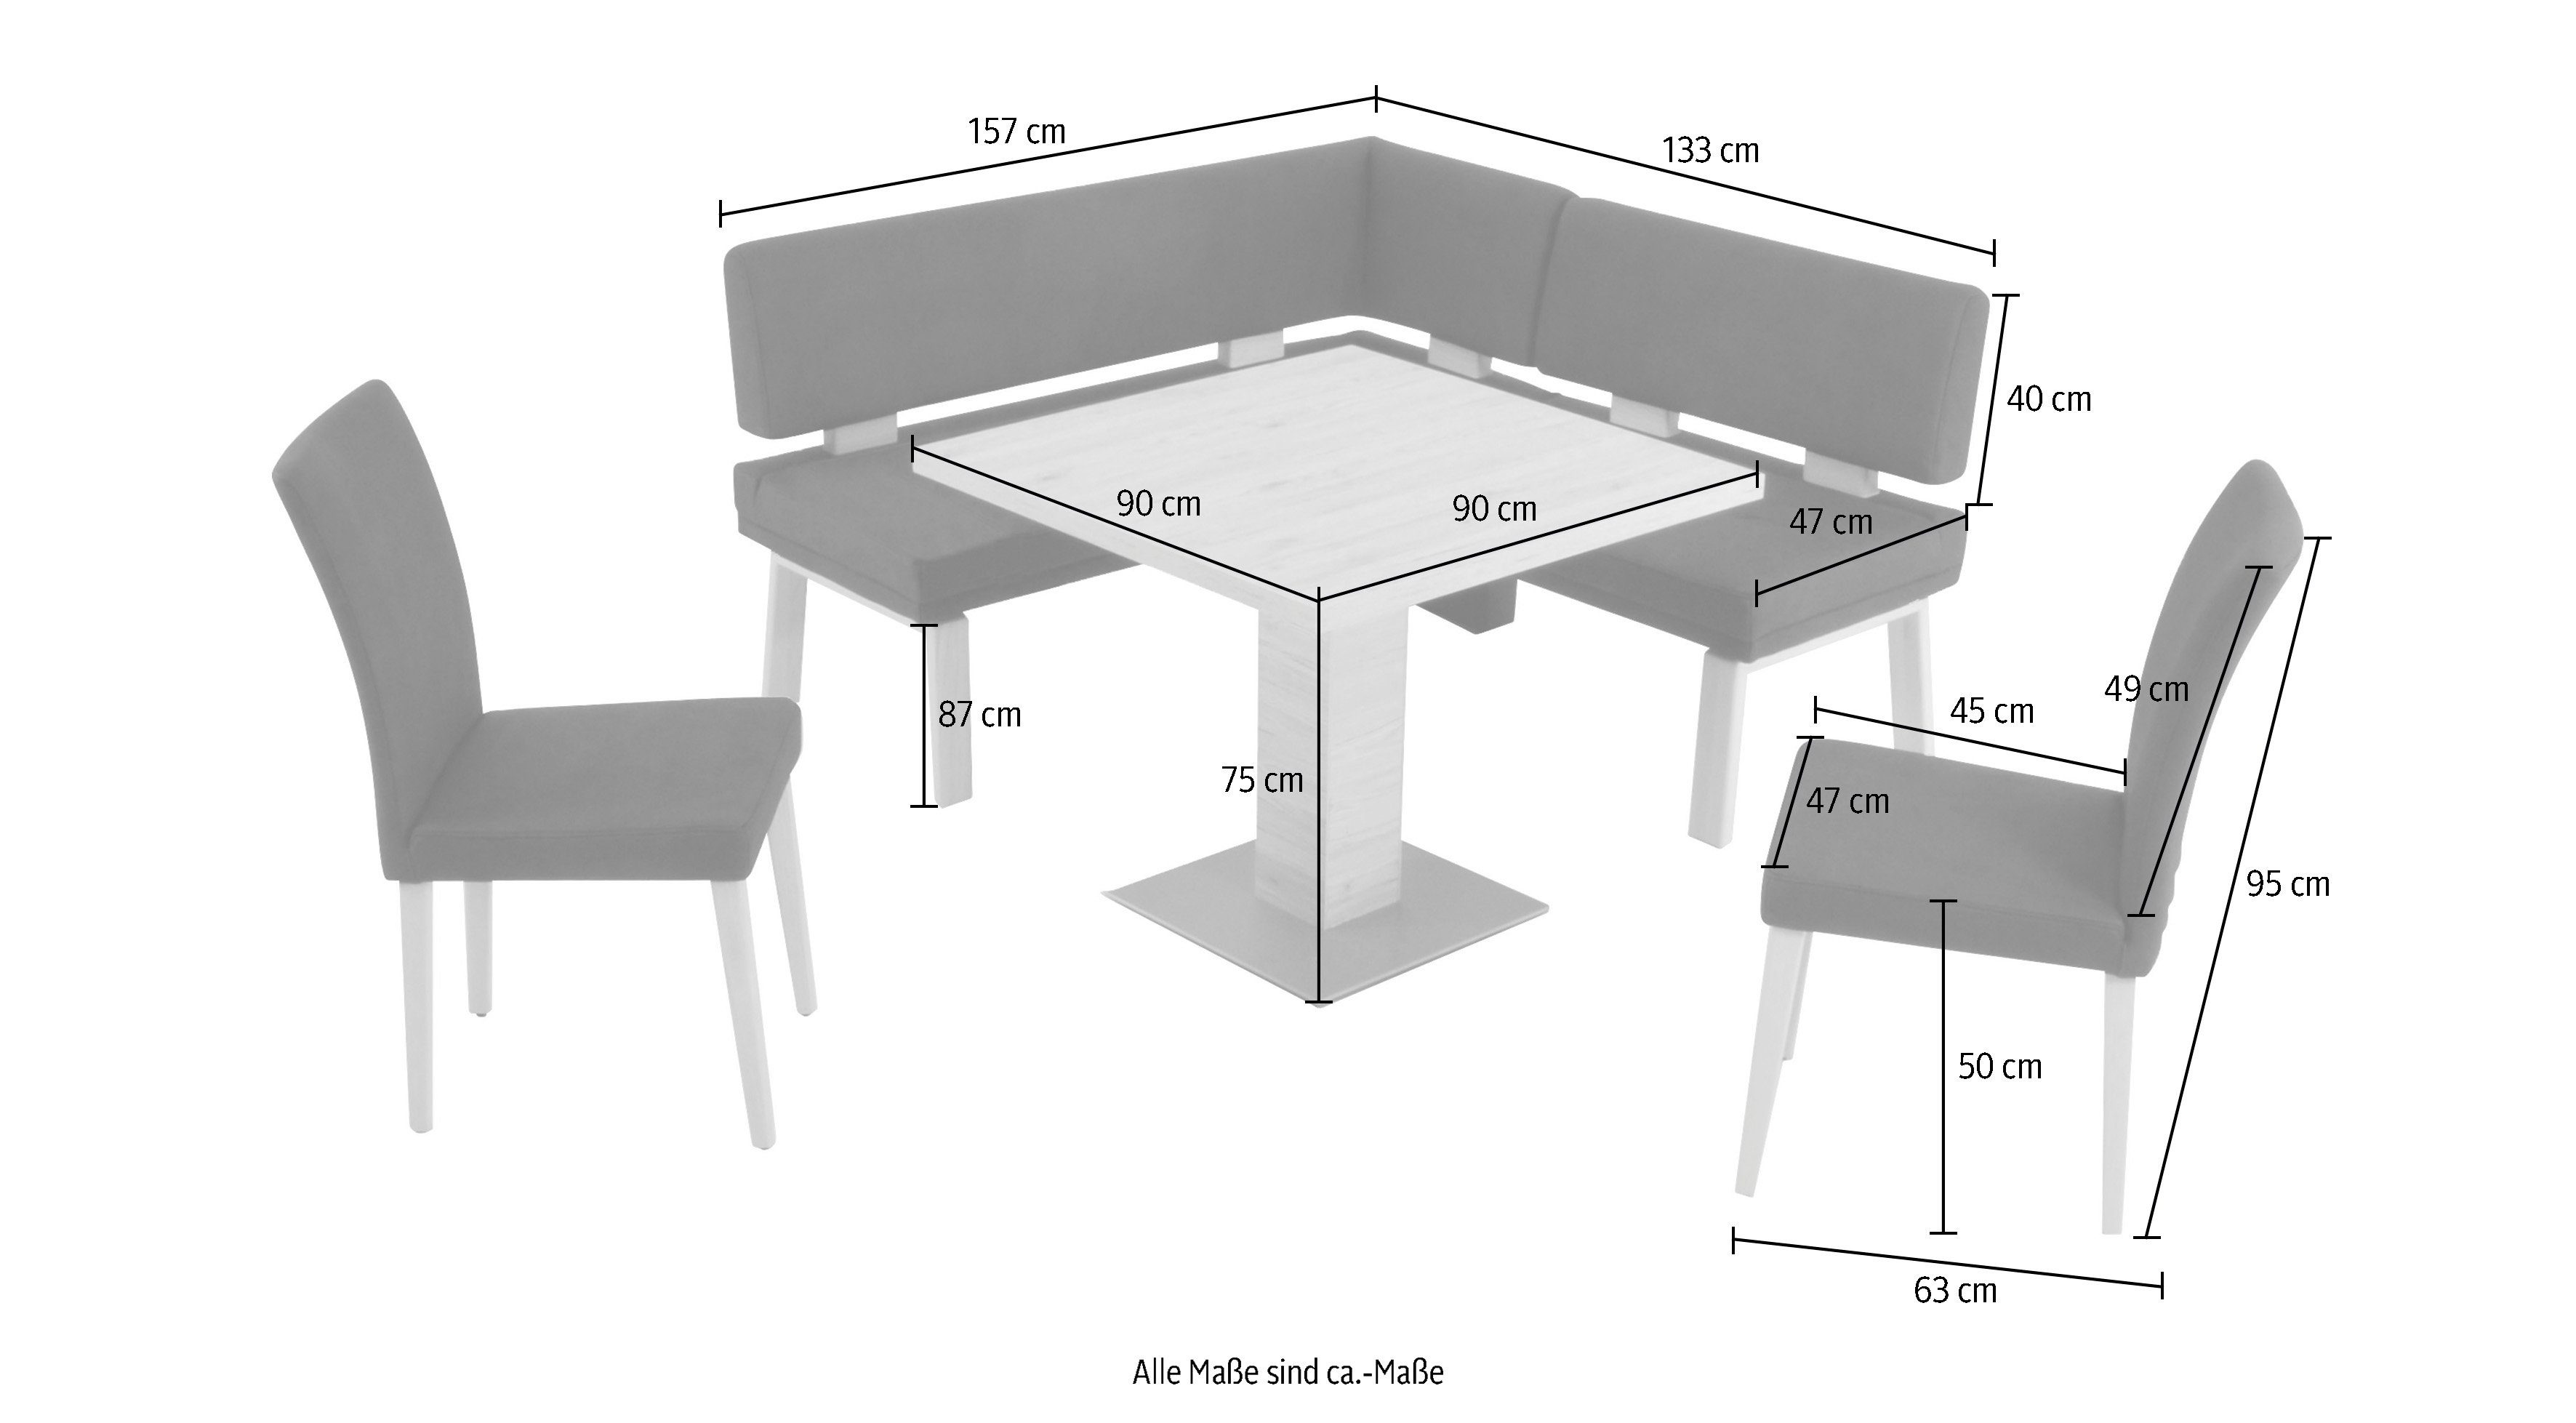 K+W Komfort & Wohnen Tisch Eckbankgruppe ocean zwei Eiche 4-Fußholzstühle 157cm, 90x90cm, und I, gleichschenklig Santos